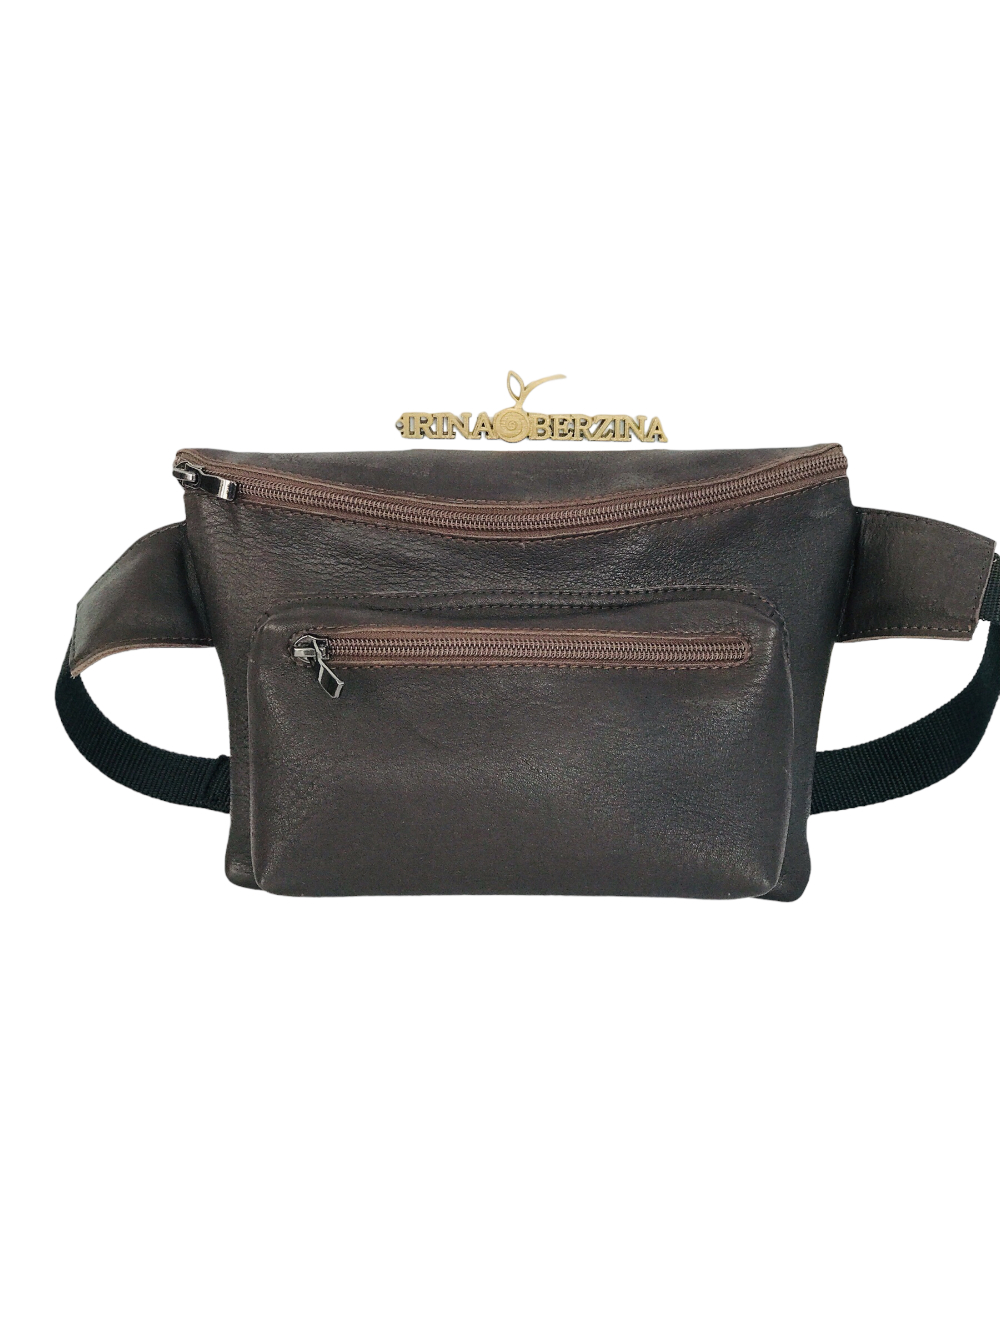 картинка кожаные  Поясная сумка-03 - Кожаная сумка, коричневая, унисекс от Ирины Берзиной